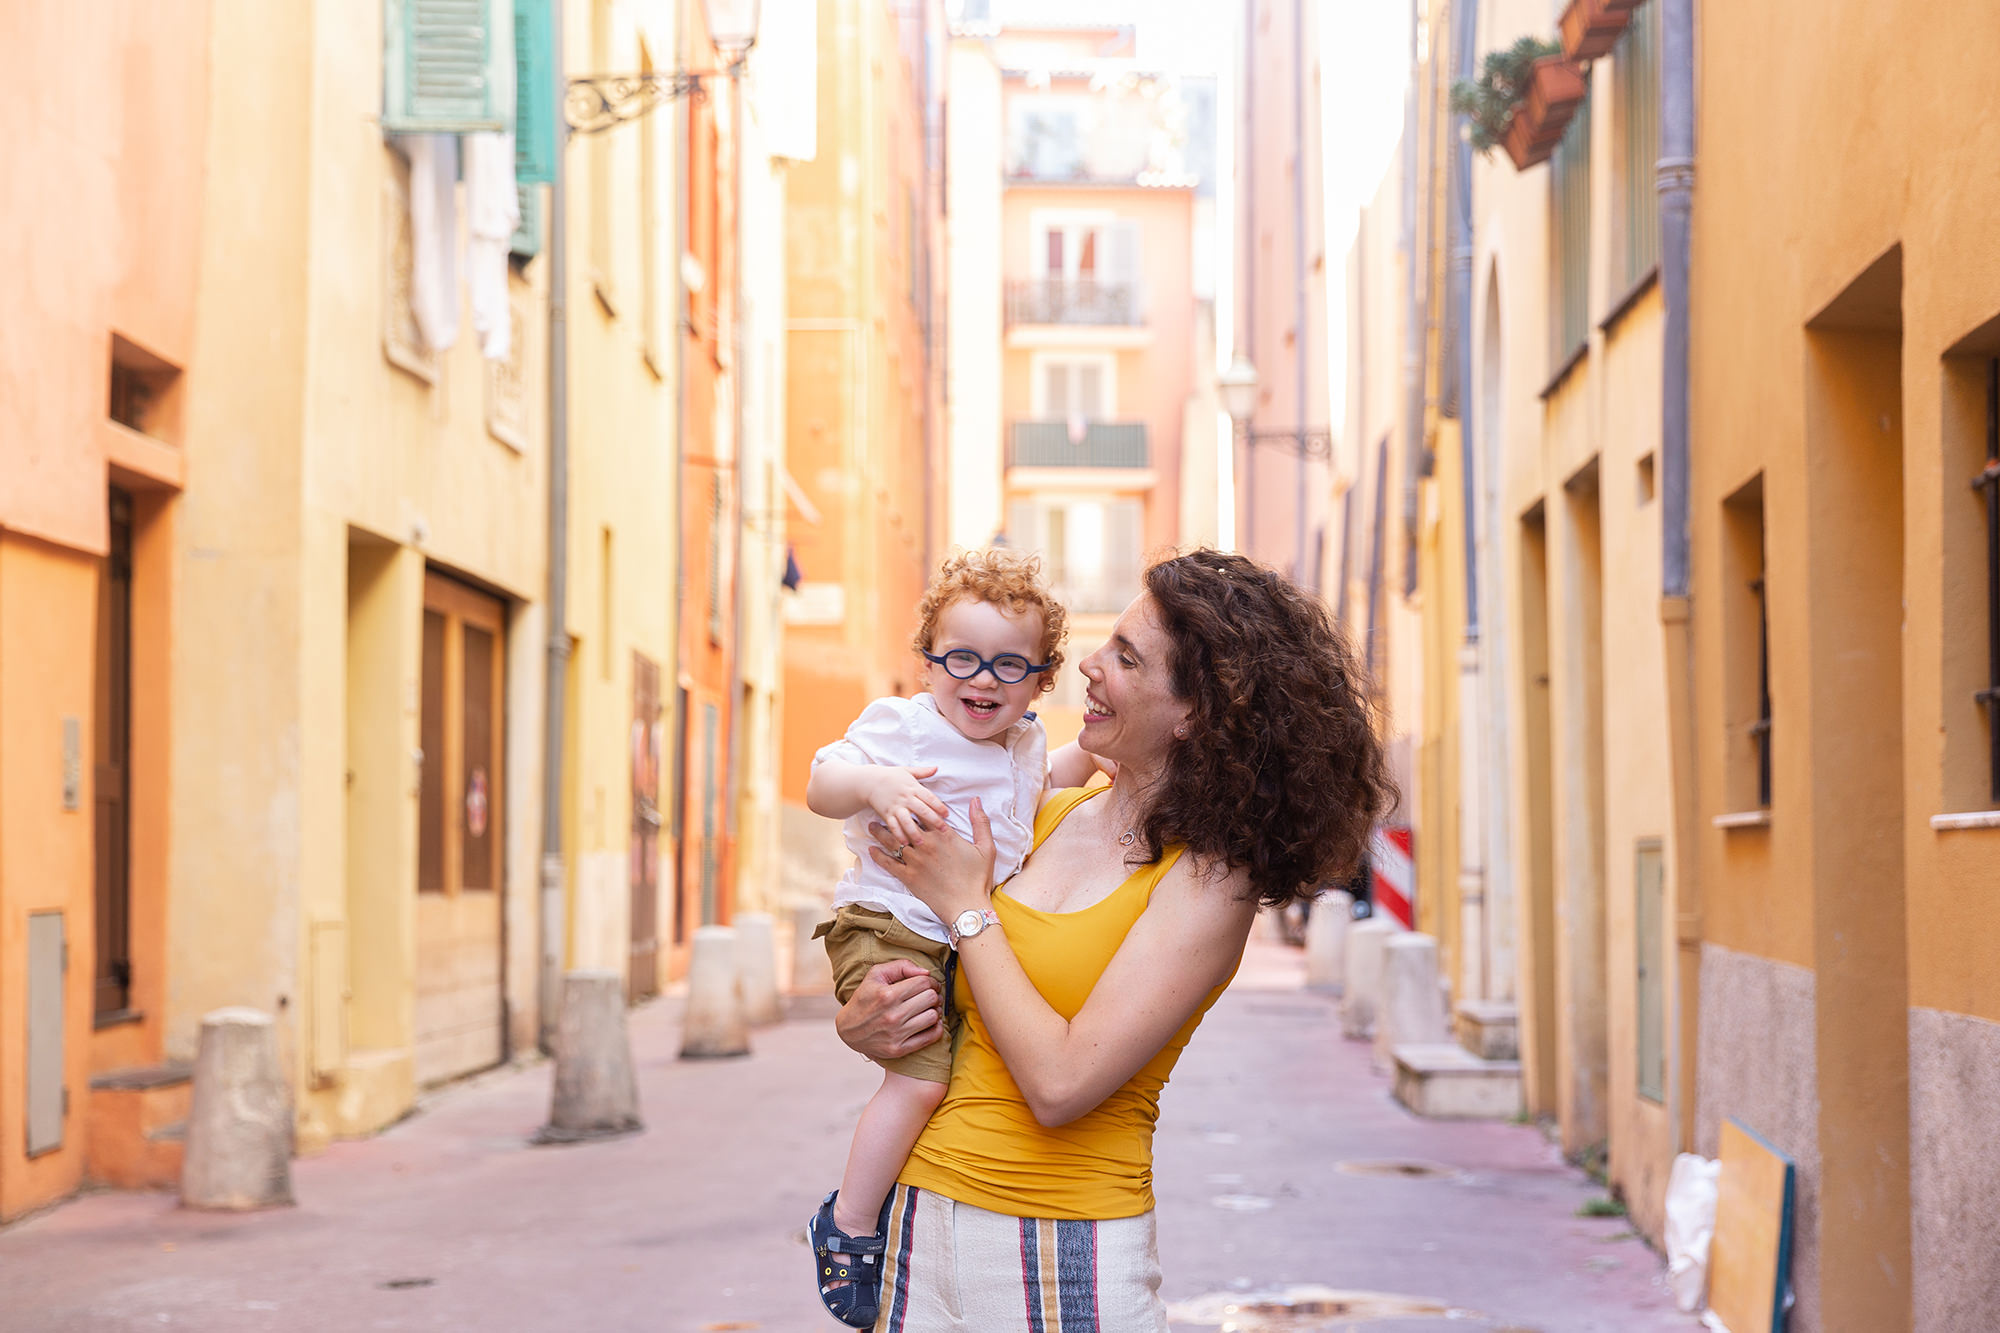 Séance photo lifestyle en famille à Nice. Photo d'une mère et son fils de deux ans riant dans ses bras prise en lumière naturelle dans le Vieux-Nice.